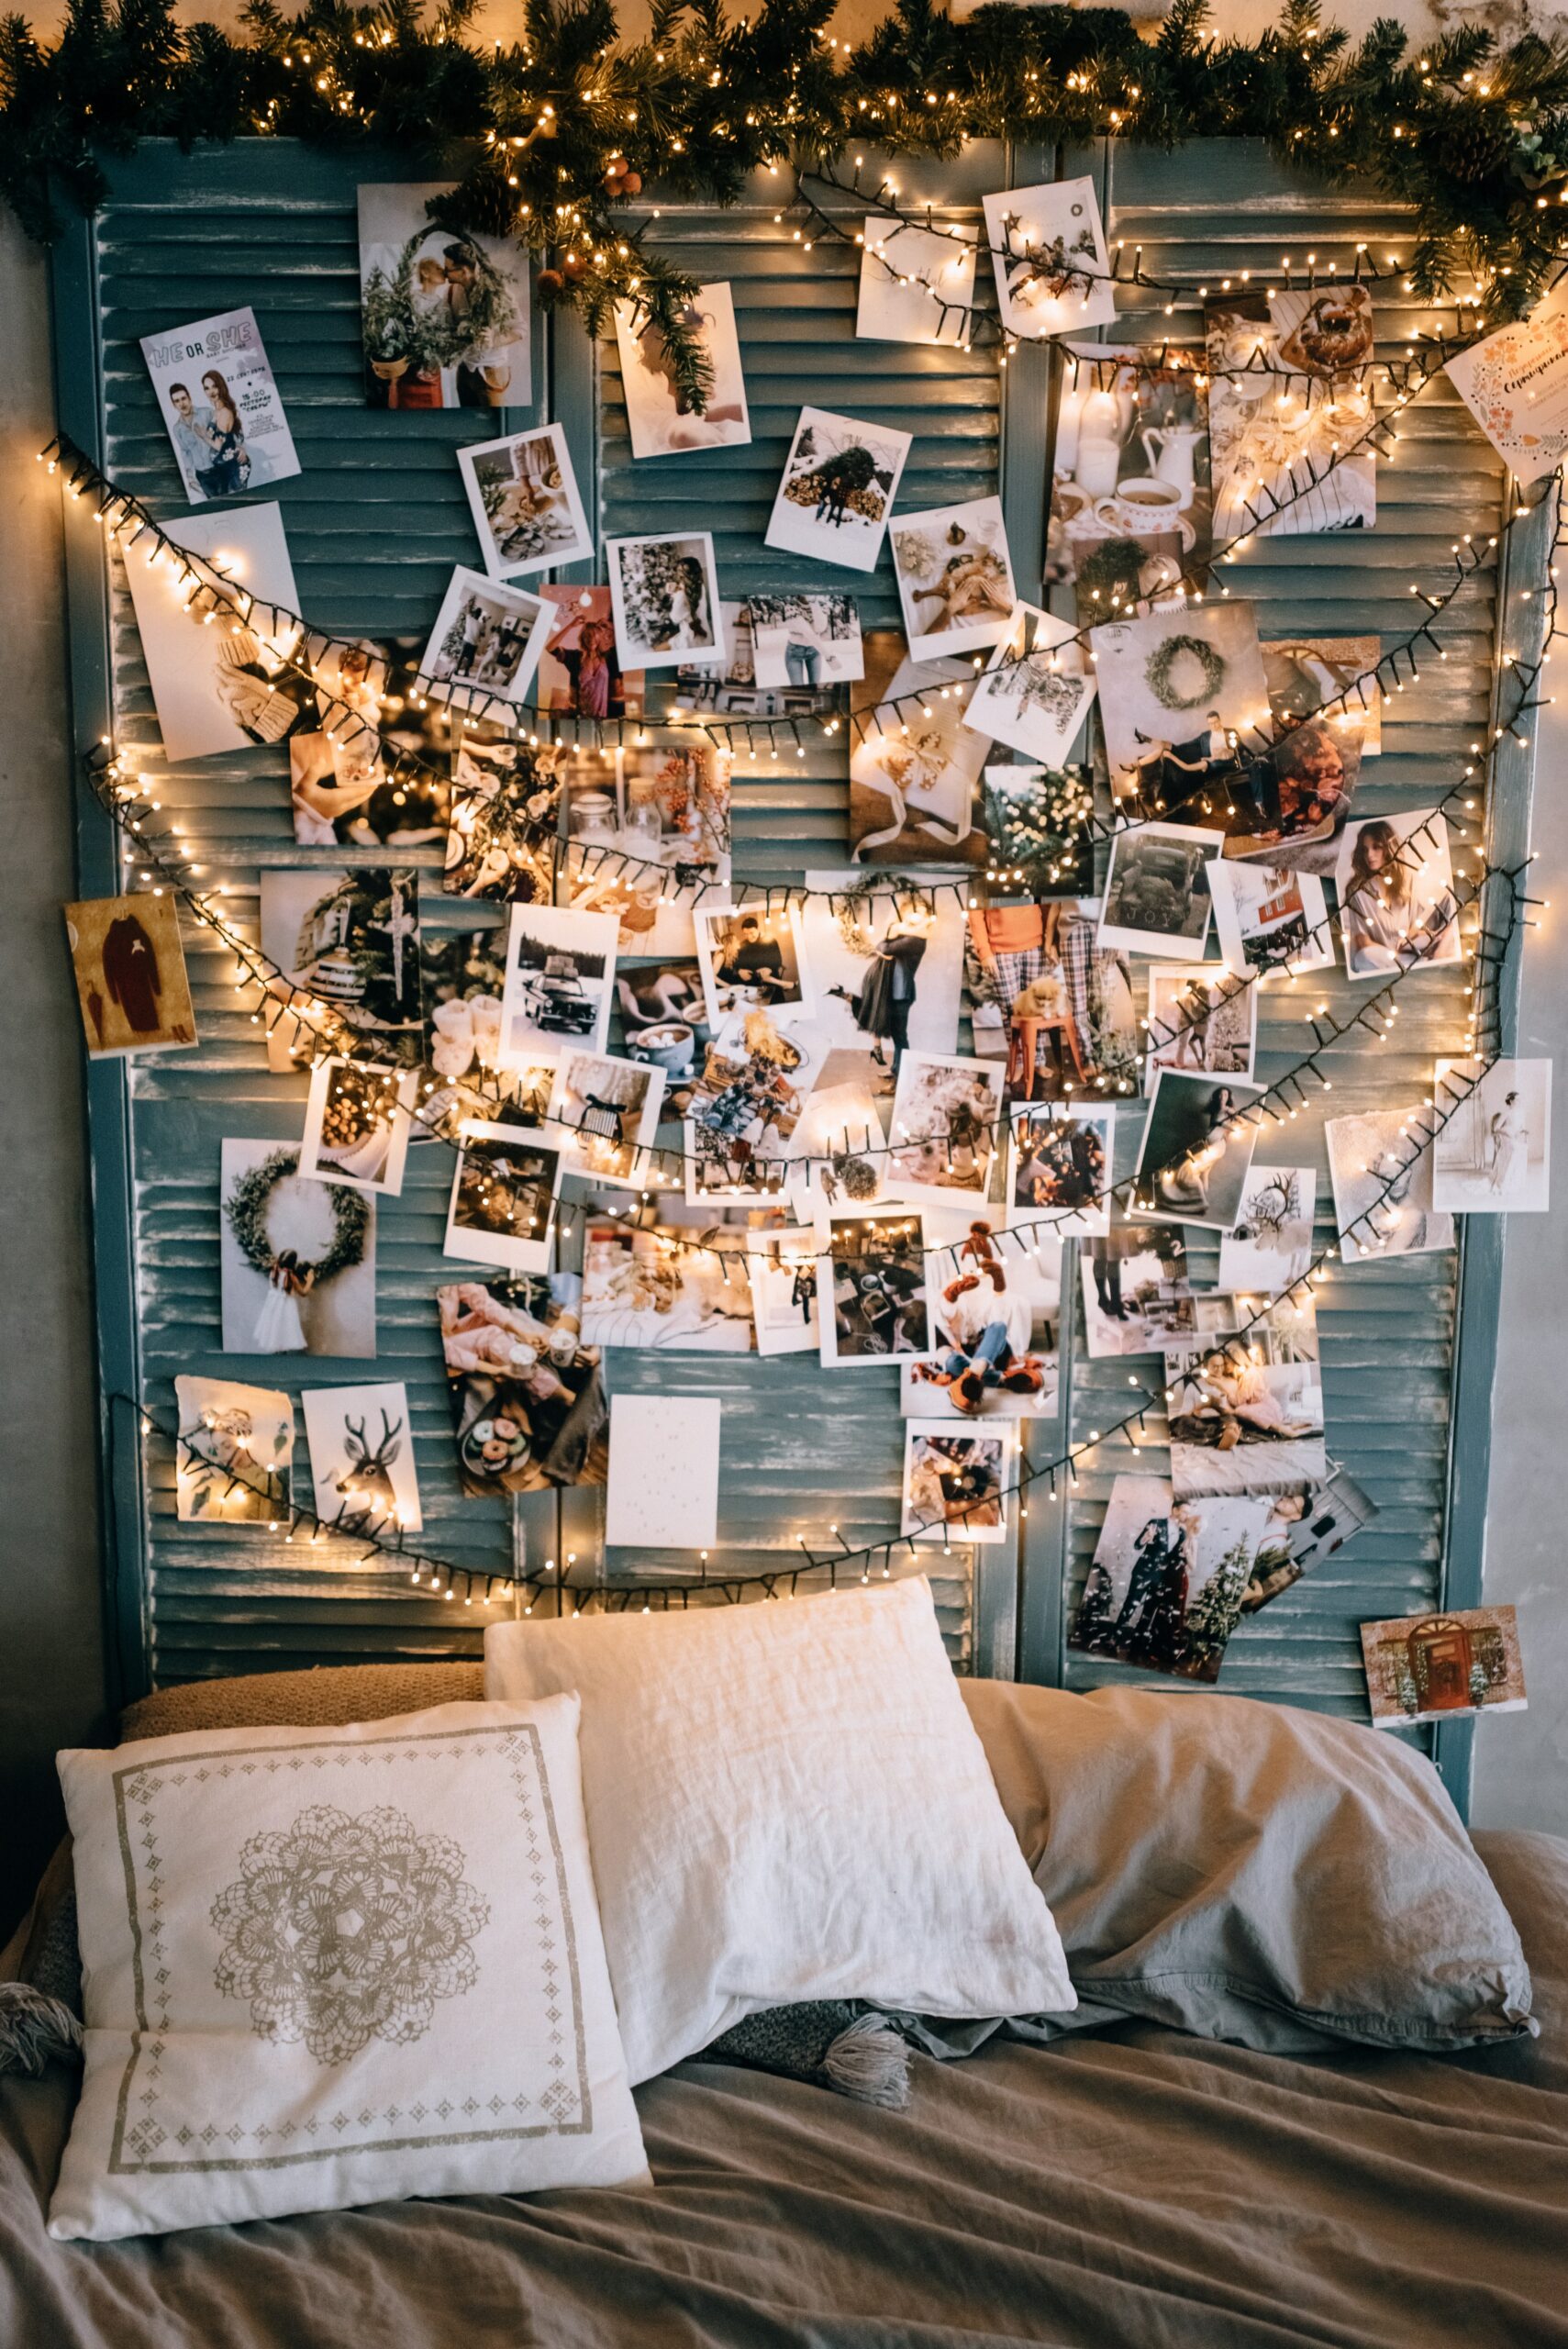 Kleine foto's aan de muur kussens slapen bed